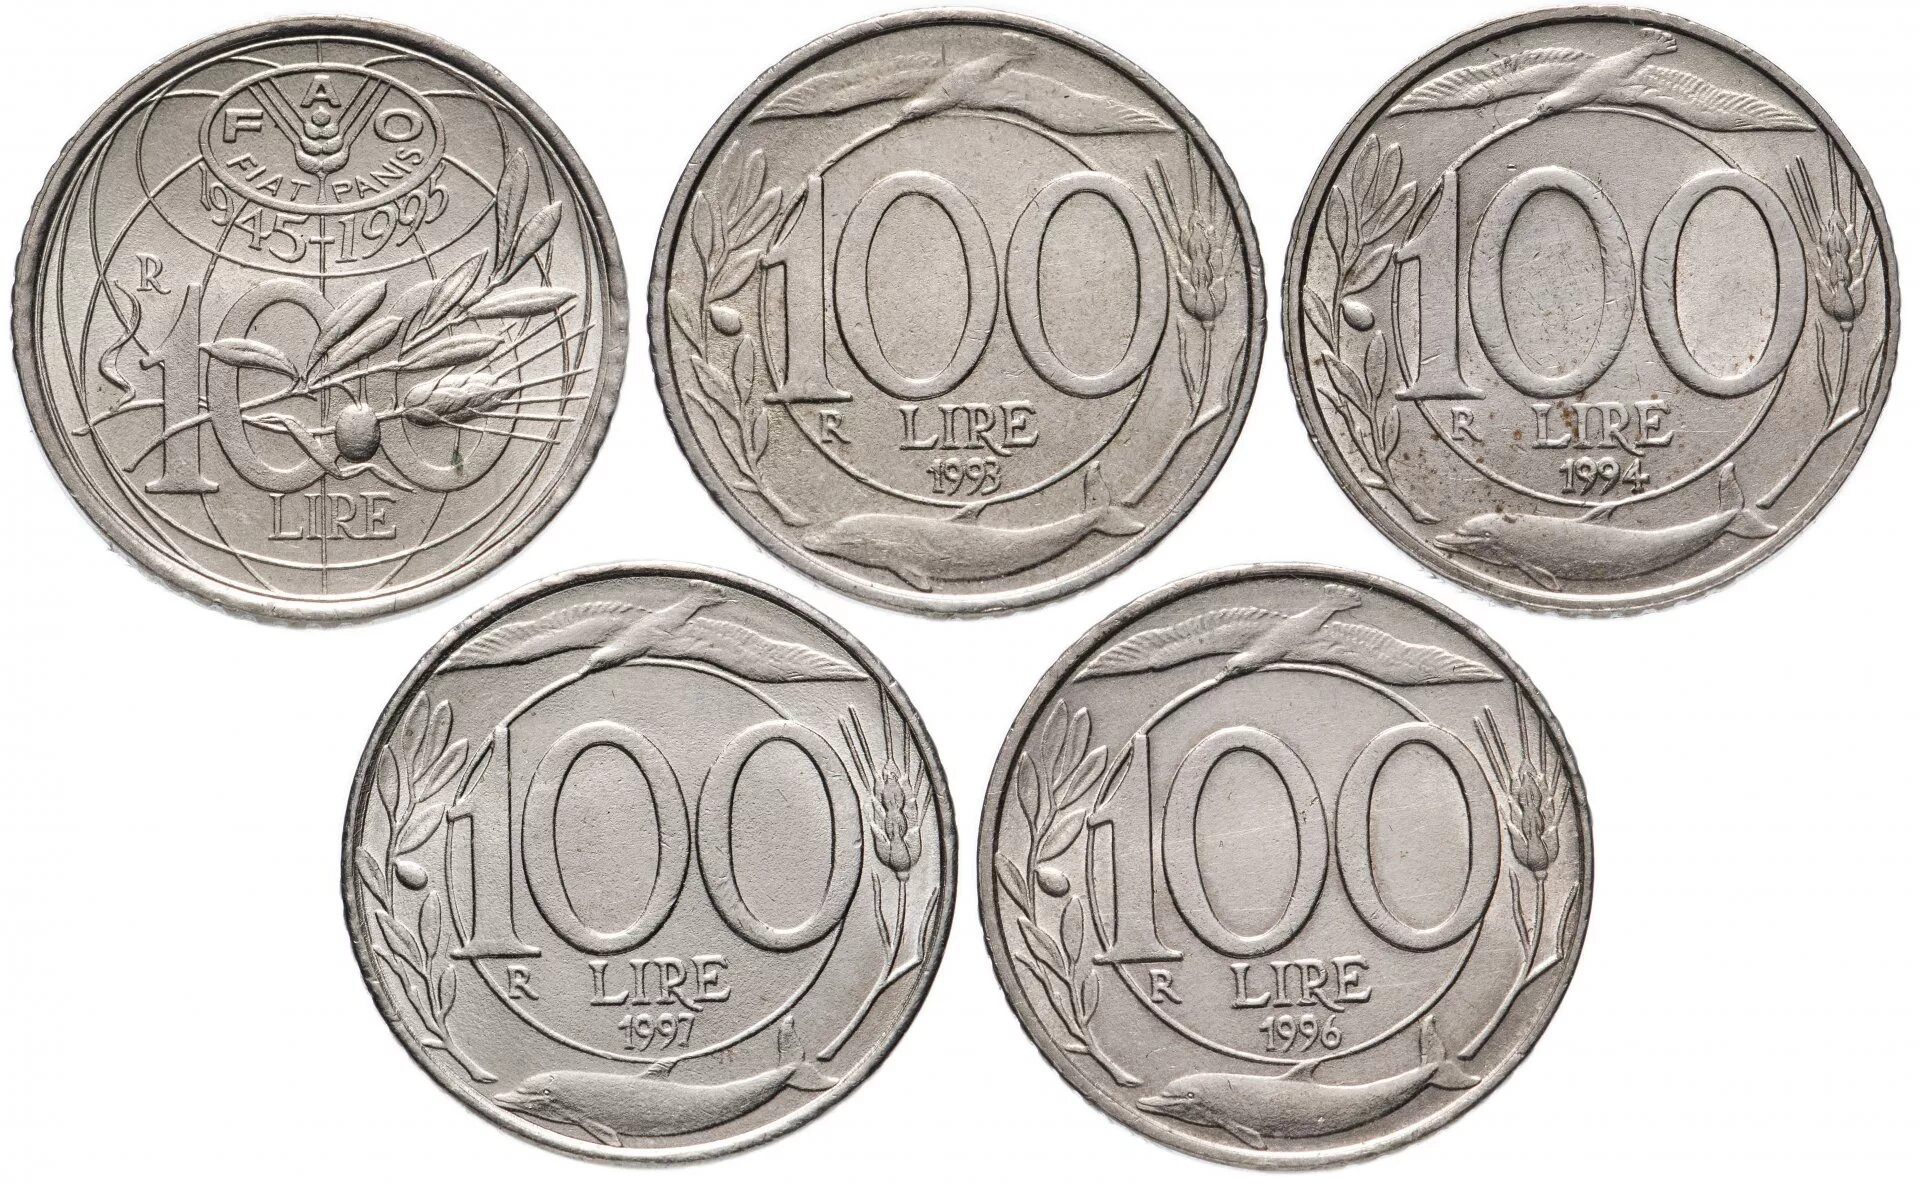 Сколько стоят монеты 1993 года цена. Греческие монеты 1993 года. Италия 500 лир 1993. 20 Греческая монета 1993 в рублях. Монеты с 1993 по 1999.